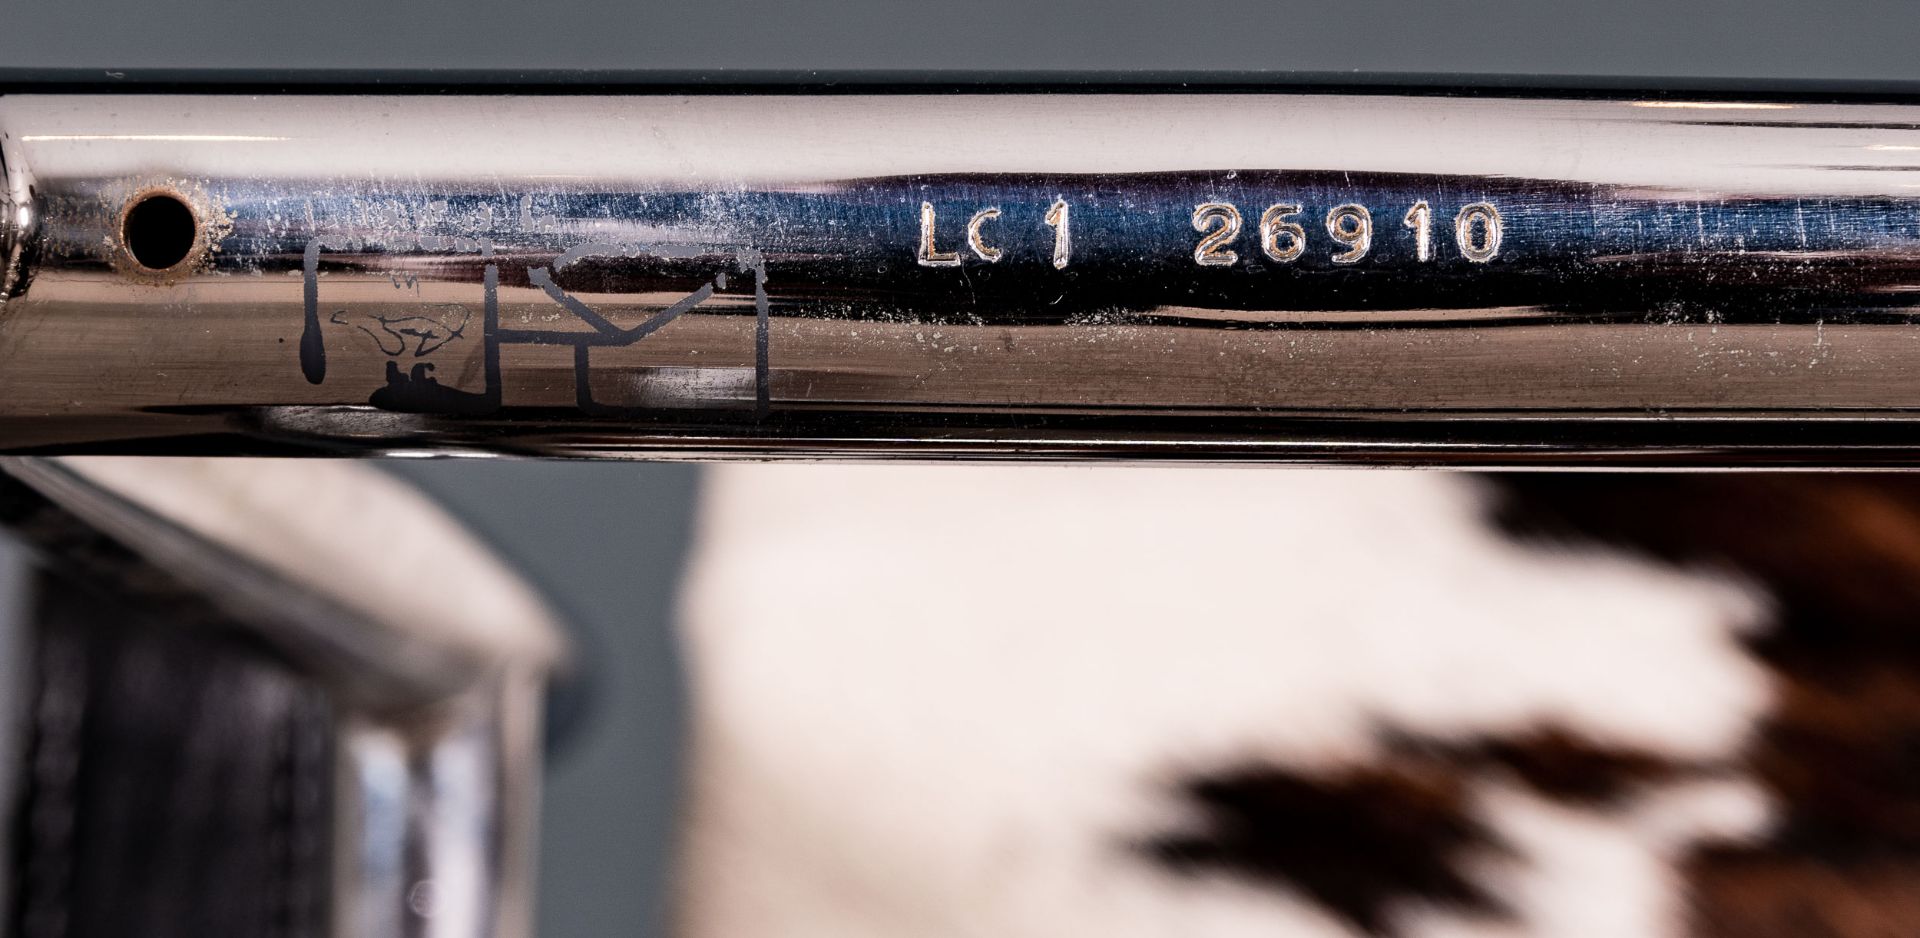 Originaler "LC 1" Armlehnsessel, Cassina, Stahlrohr verchromt, Lederriemen, geprägt bezeichnet Le C - Bild 14 aus 14